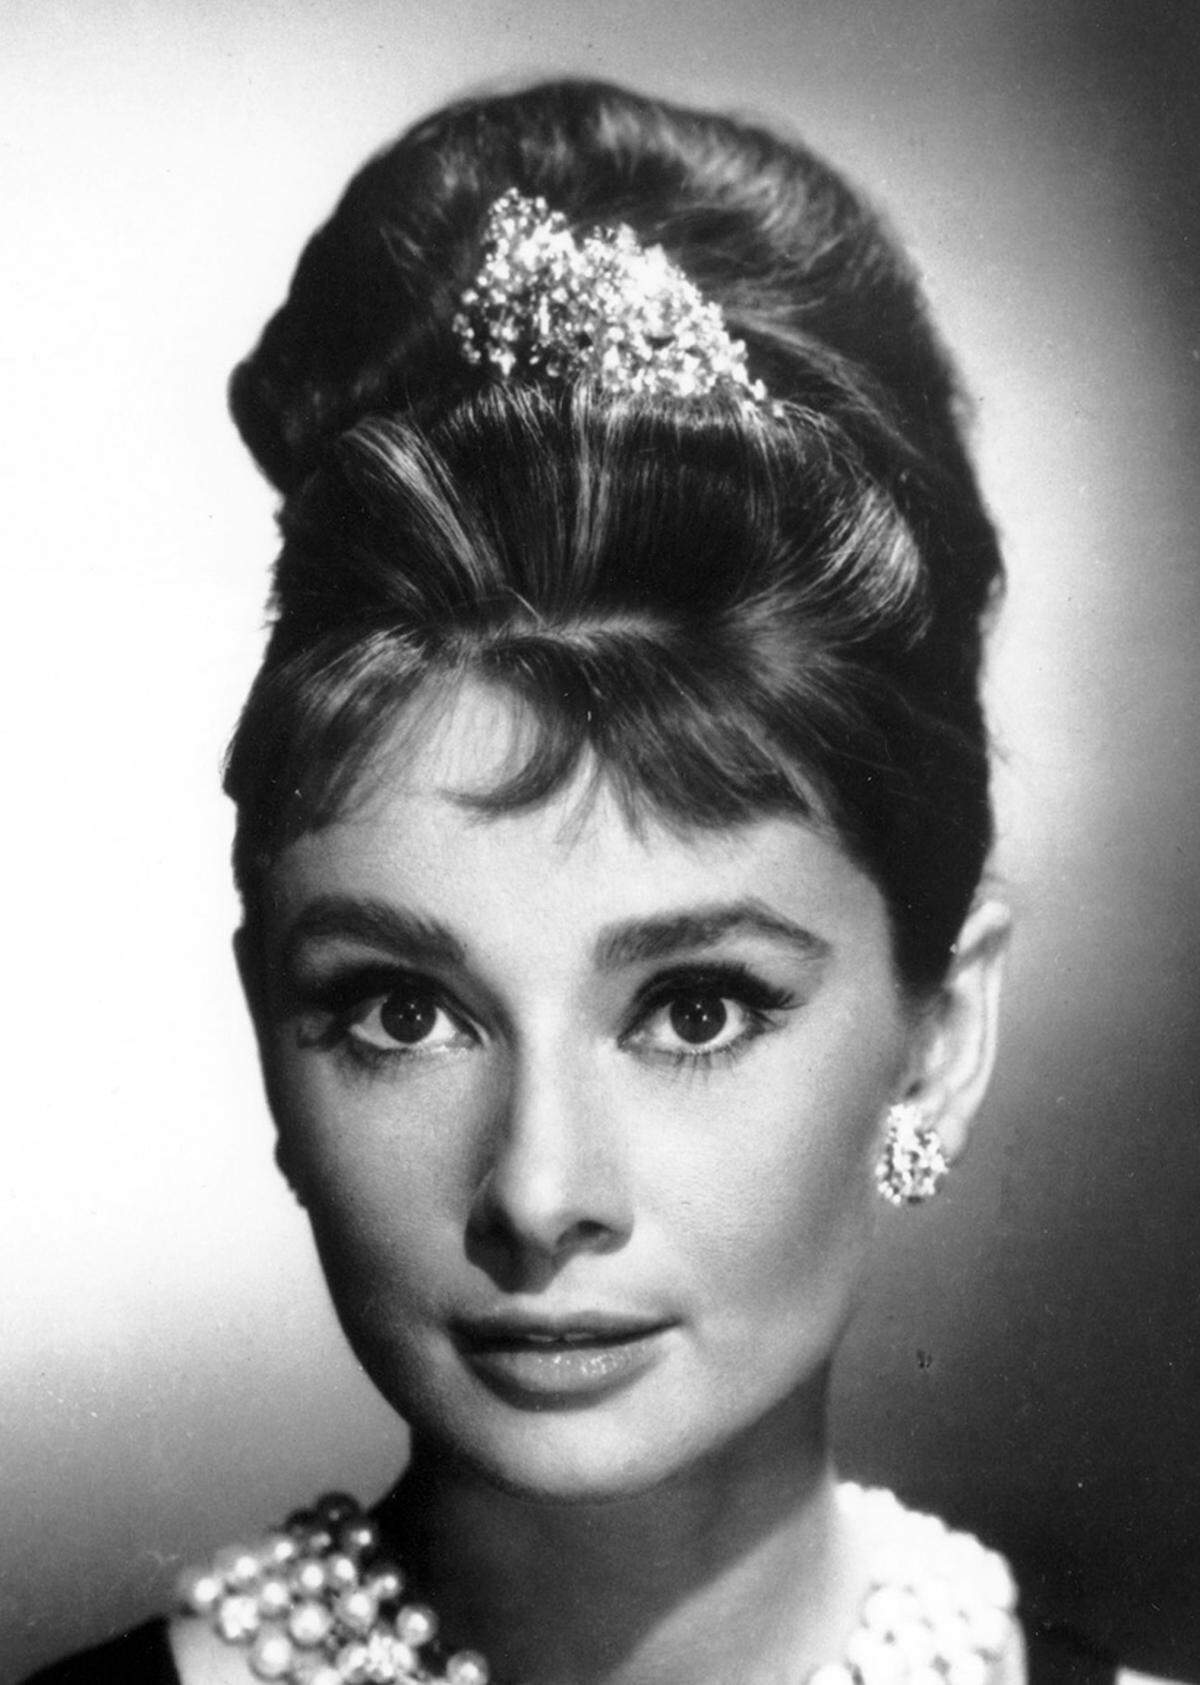 Mit Filmen wie "Frühstück bei Tiffany" wurde Audrey Hepburn mit ihren sanften Rehaugen weltberühmt und zur Stilikone auserkoren.